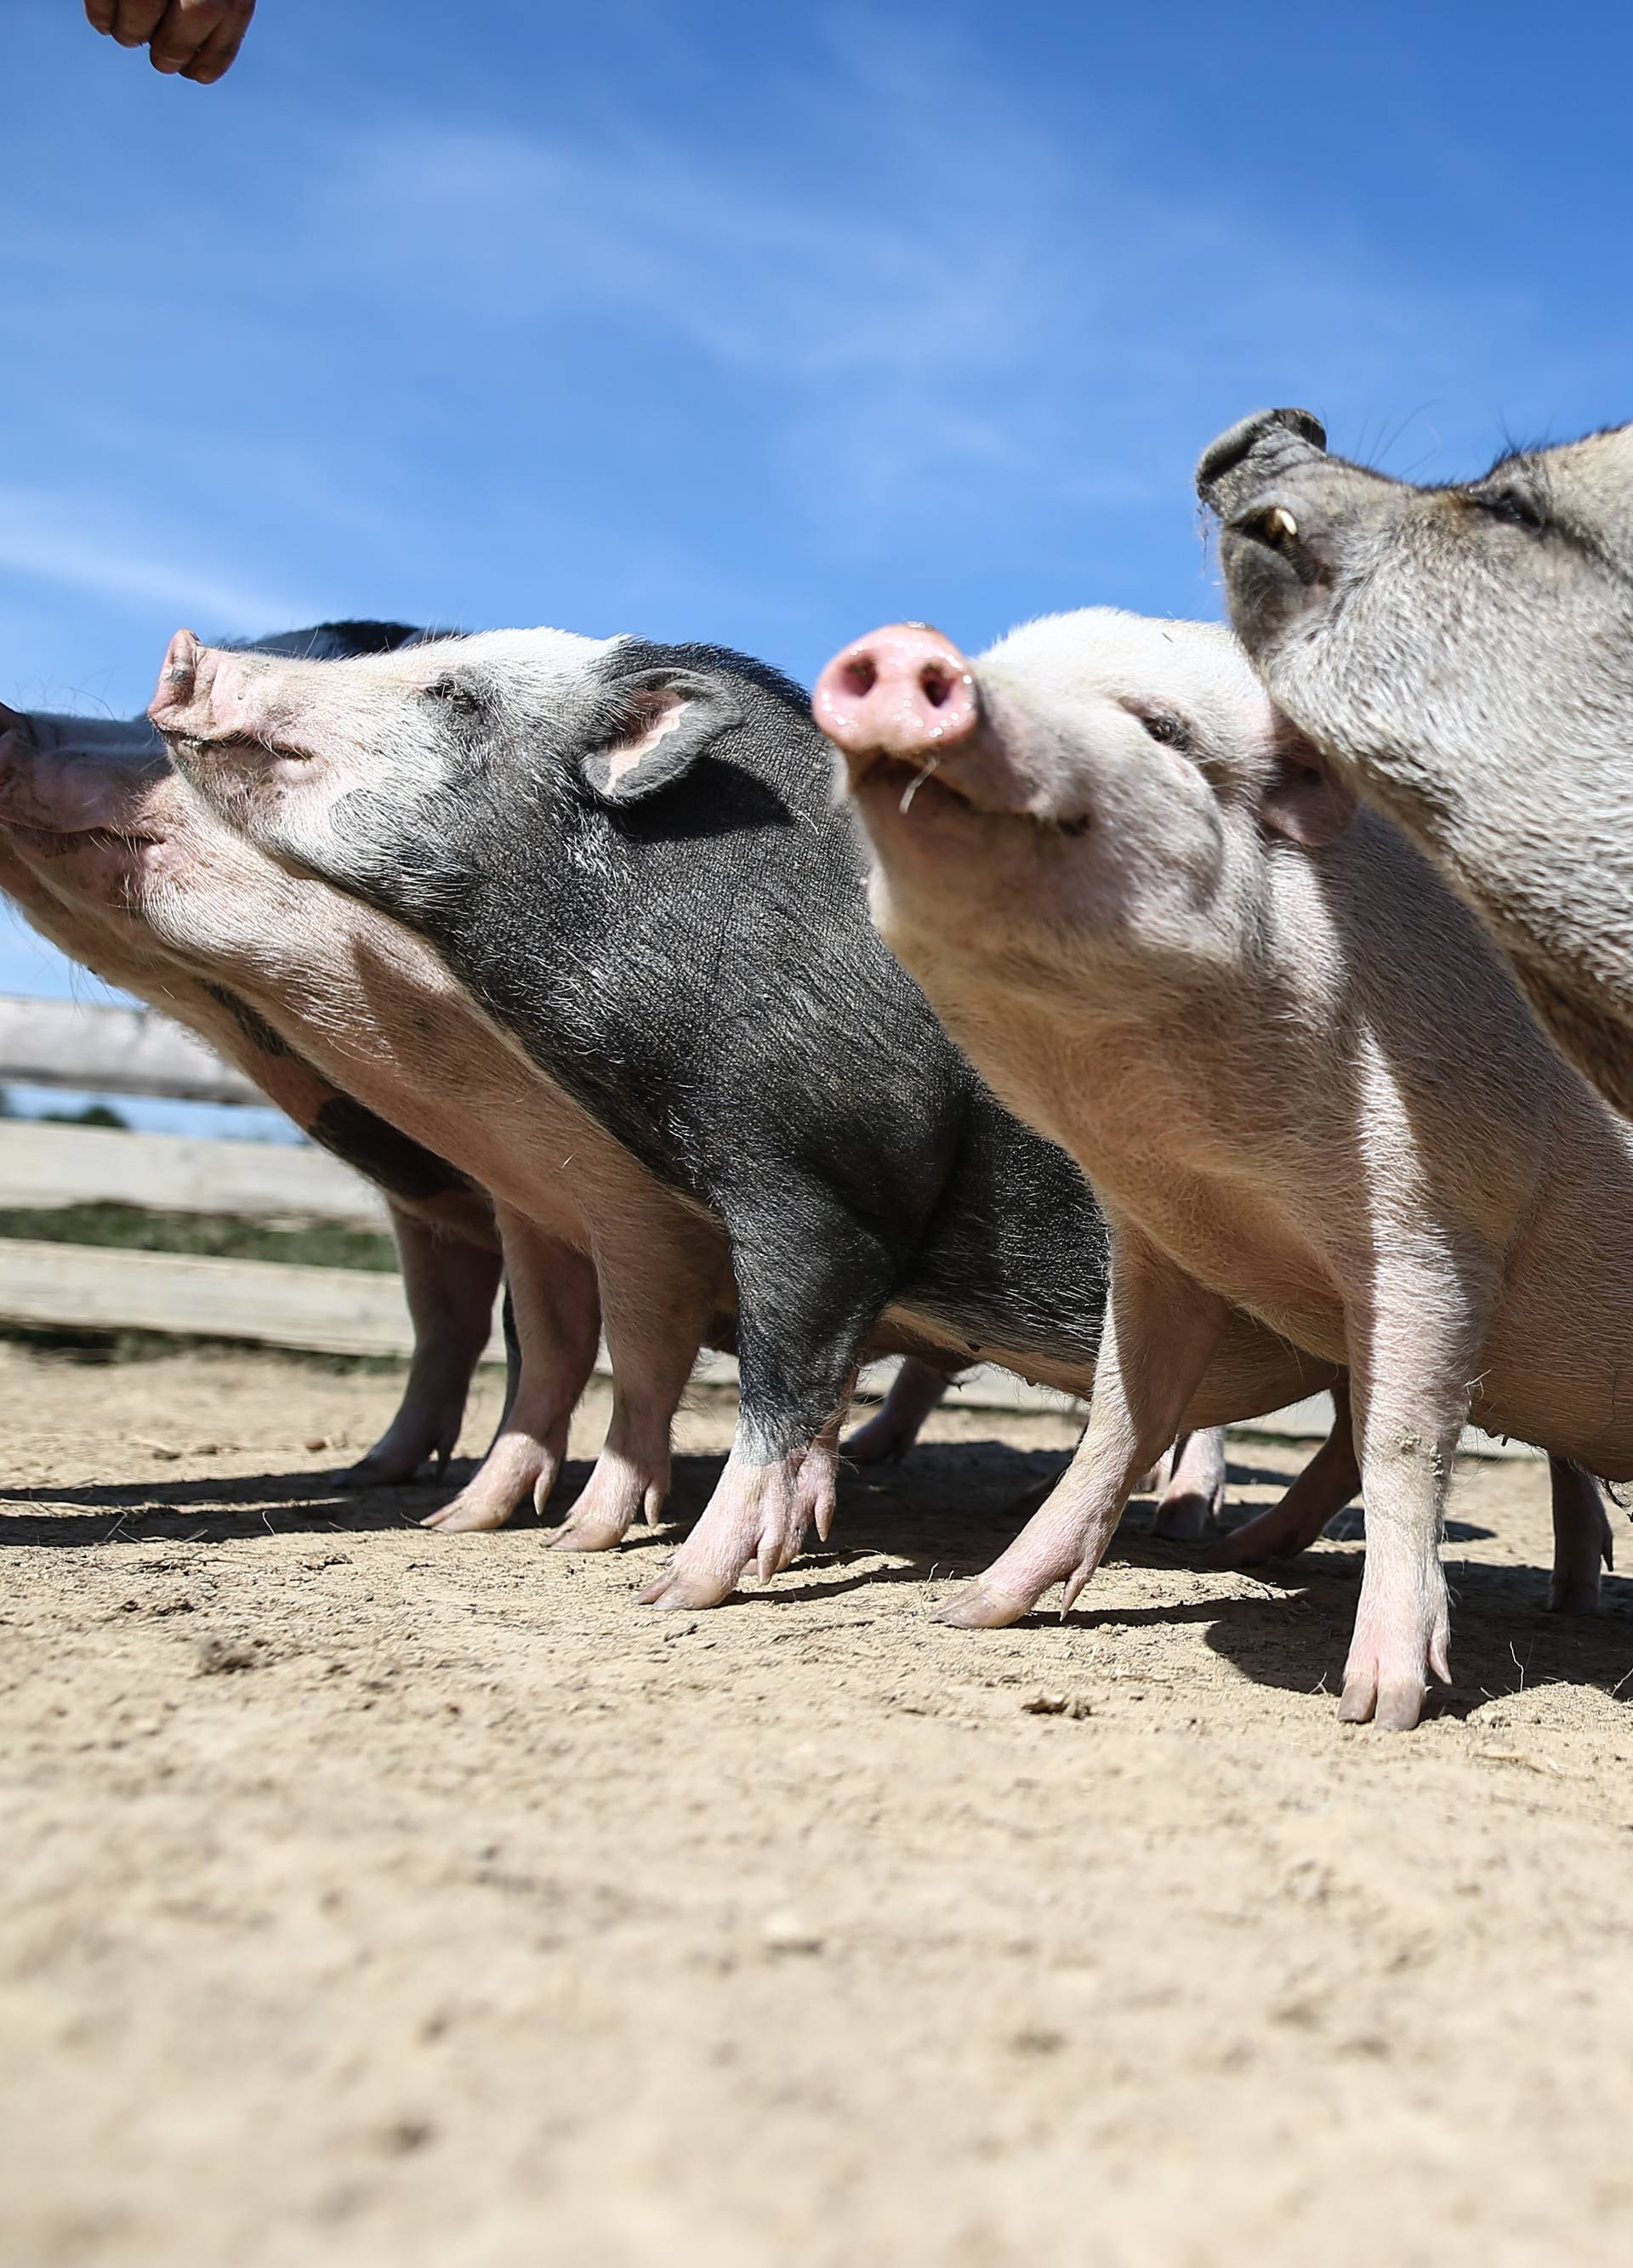 Skupa svinjetina: Mesnice su jeftinije nego trgovački lanci